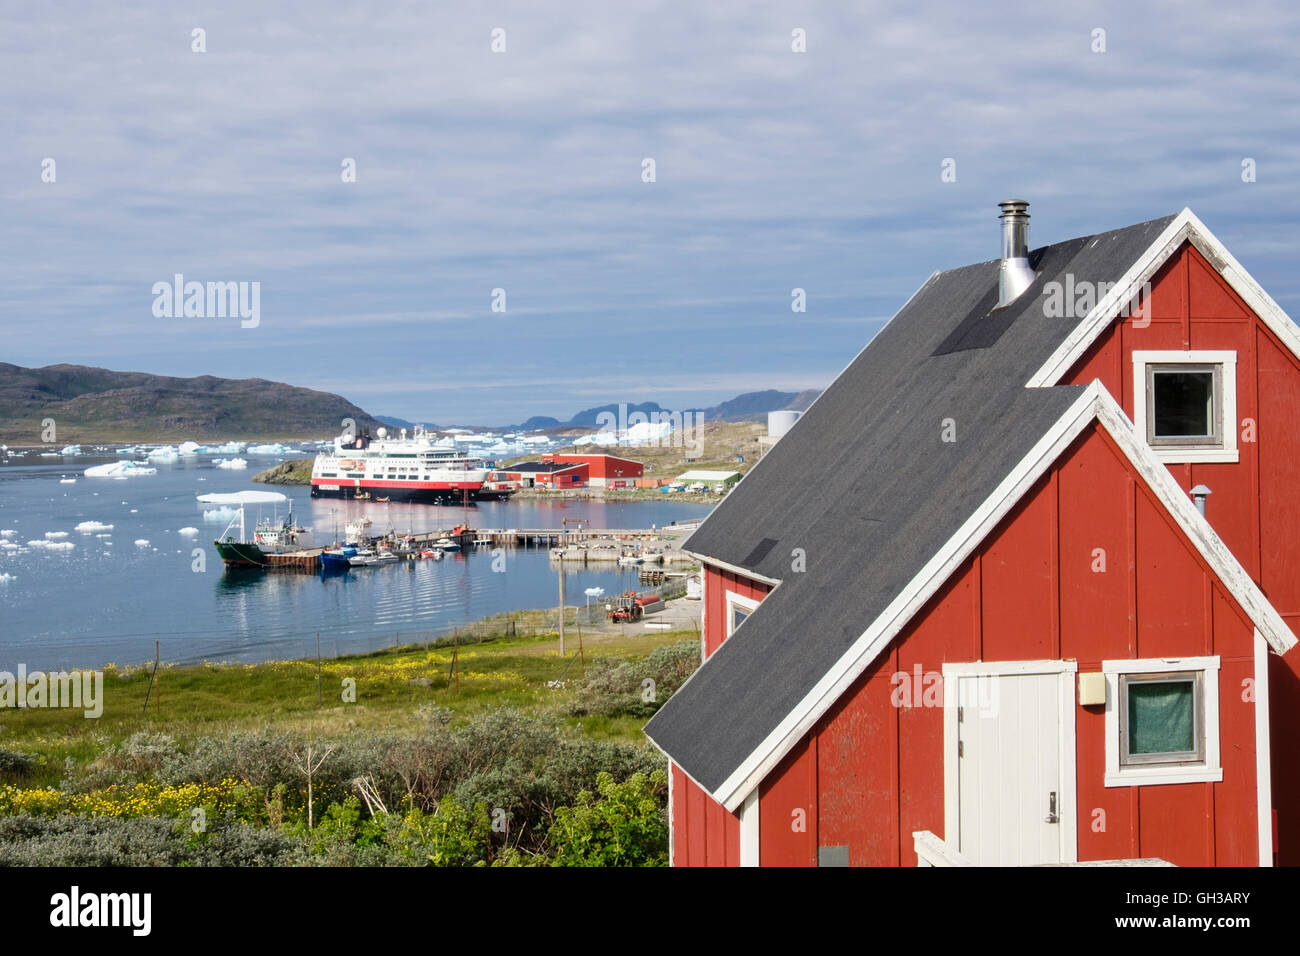 Le groenlandais de bois rouge maison donnant sur port de pêche dans le fjord Tunulliarfik d'icebergs flottant dans l'été. Narsaq Groenland Banque D'Images